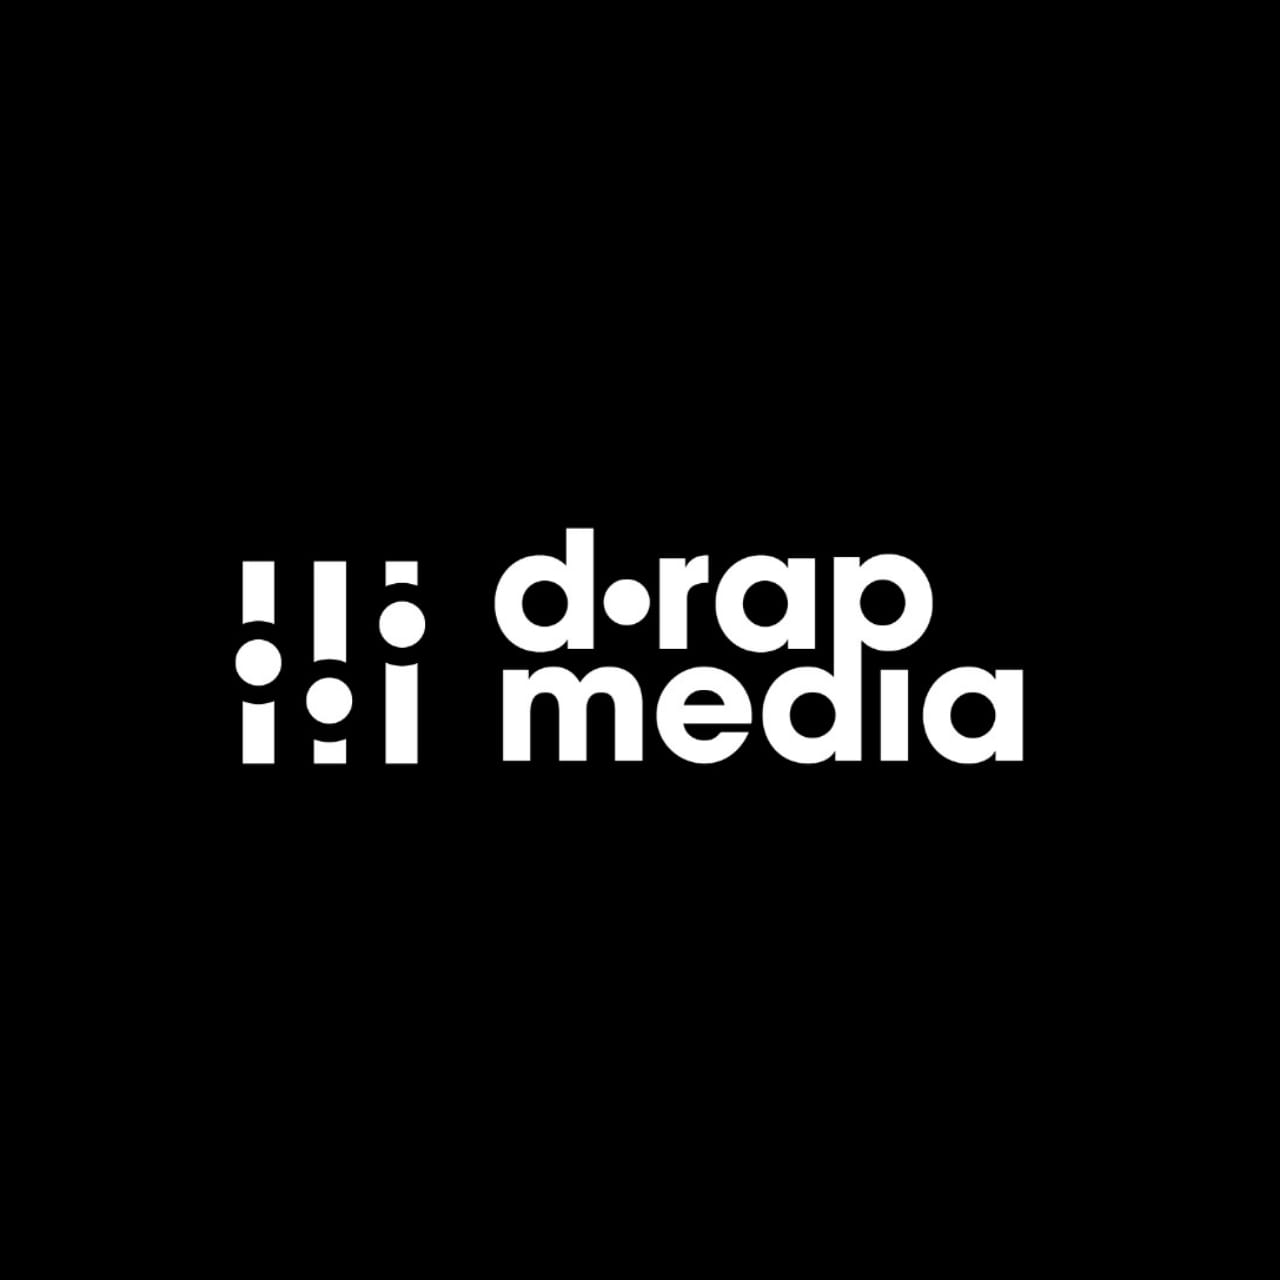 Drap Media – gelecek vadeden rap müzisyenleri için eksiksiz hizmet vermekte.